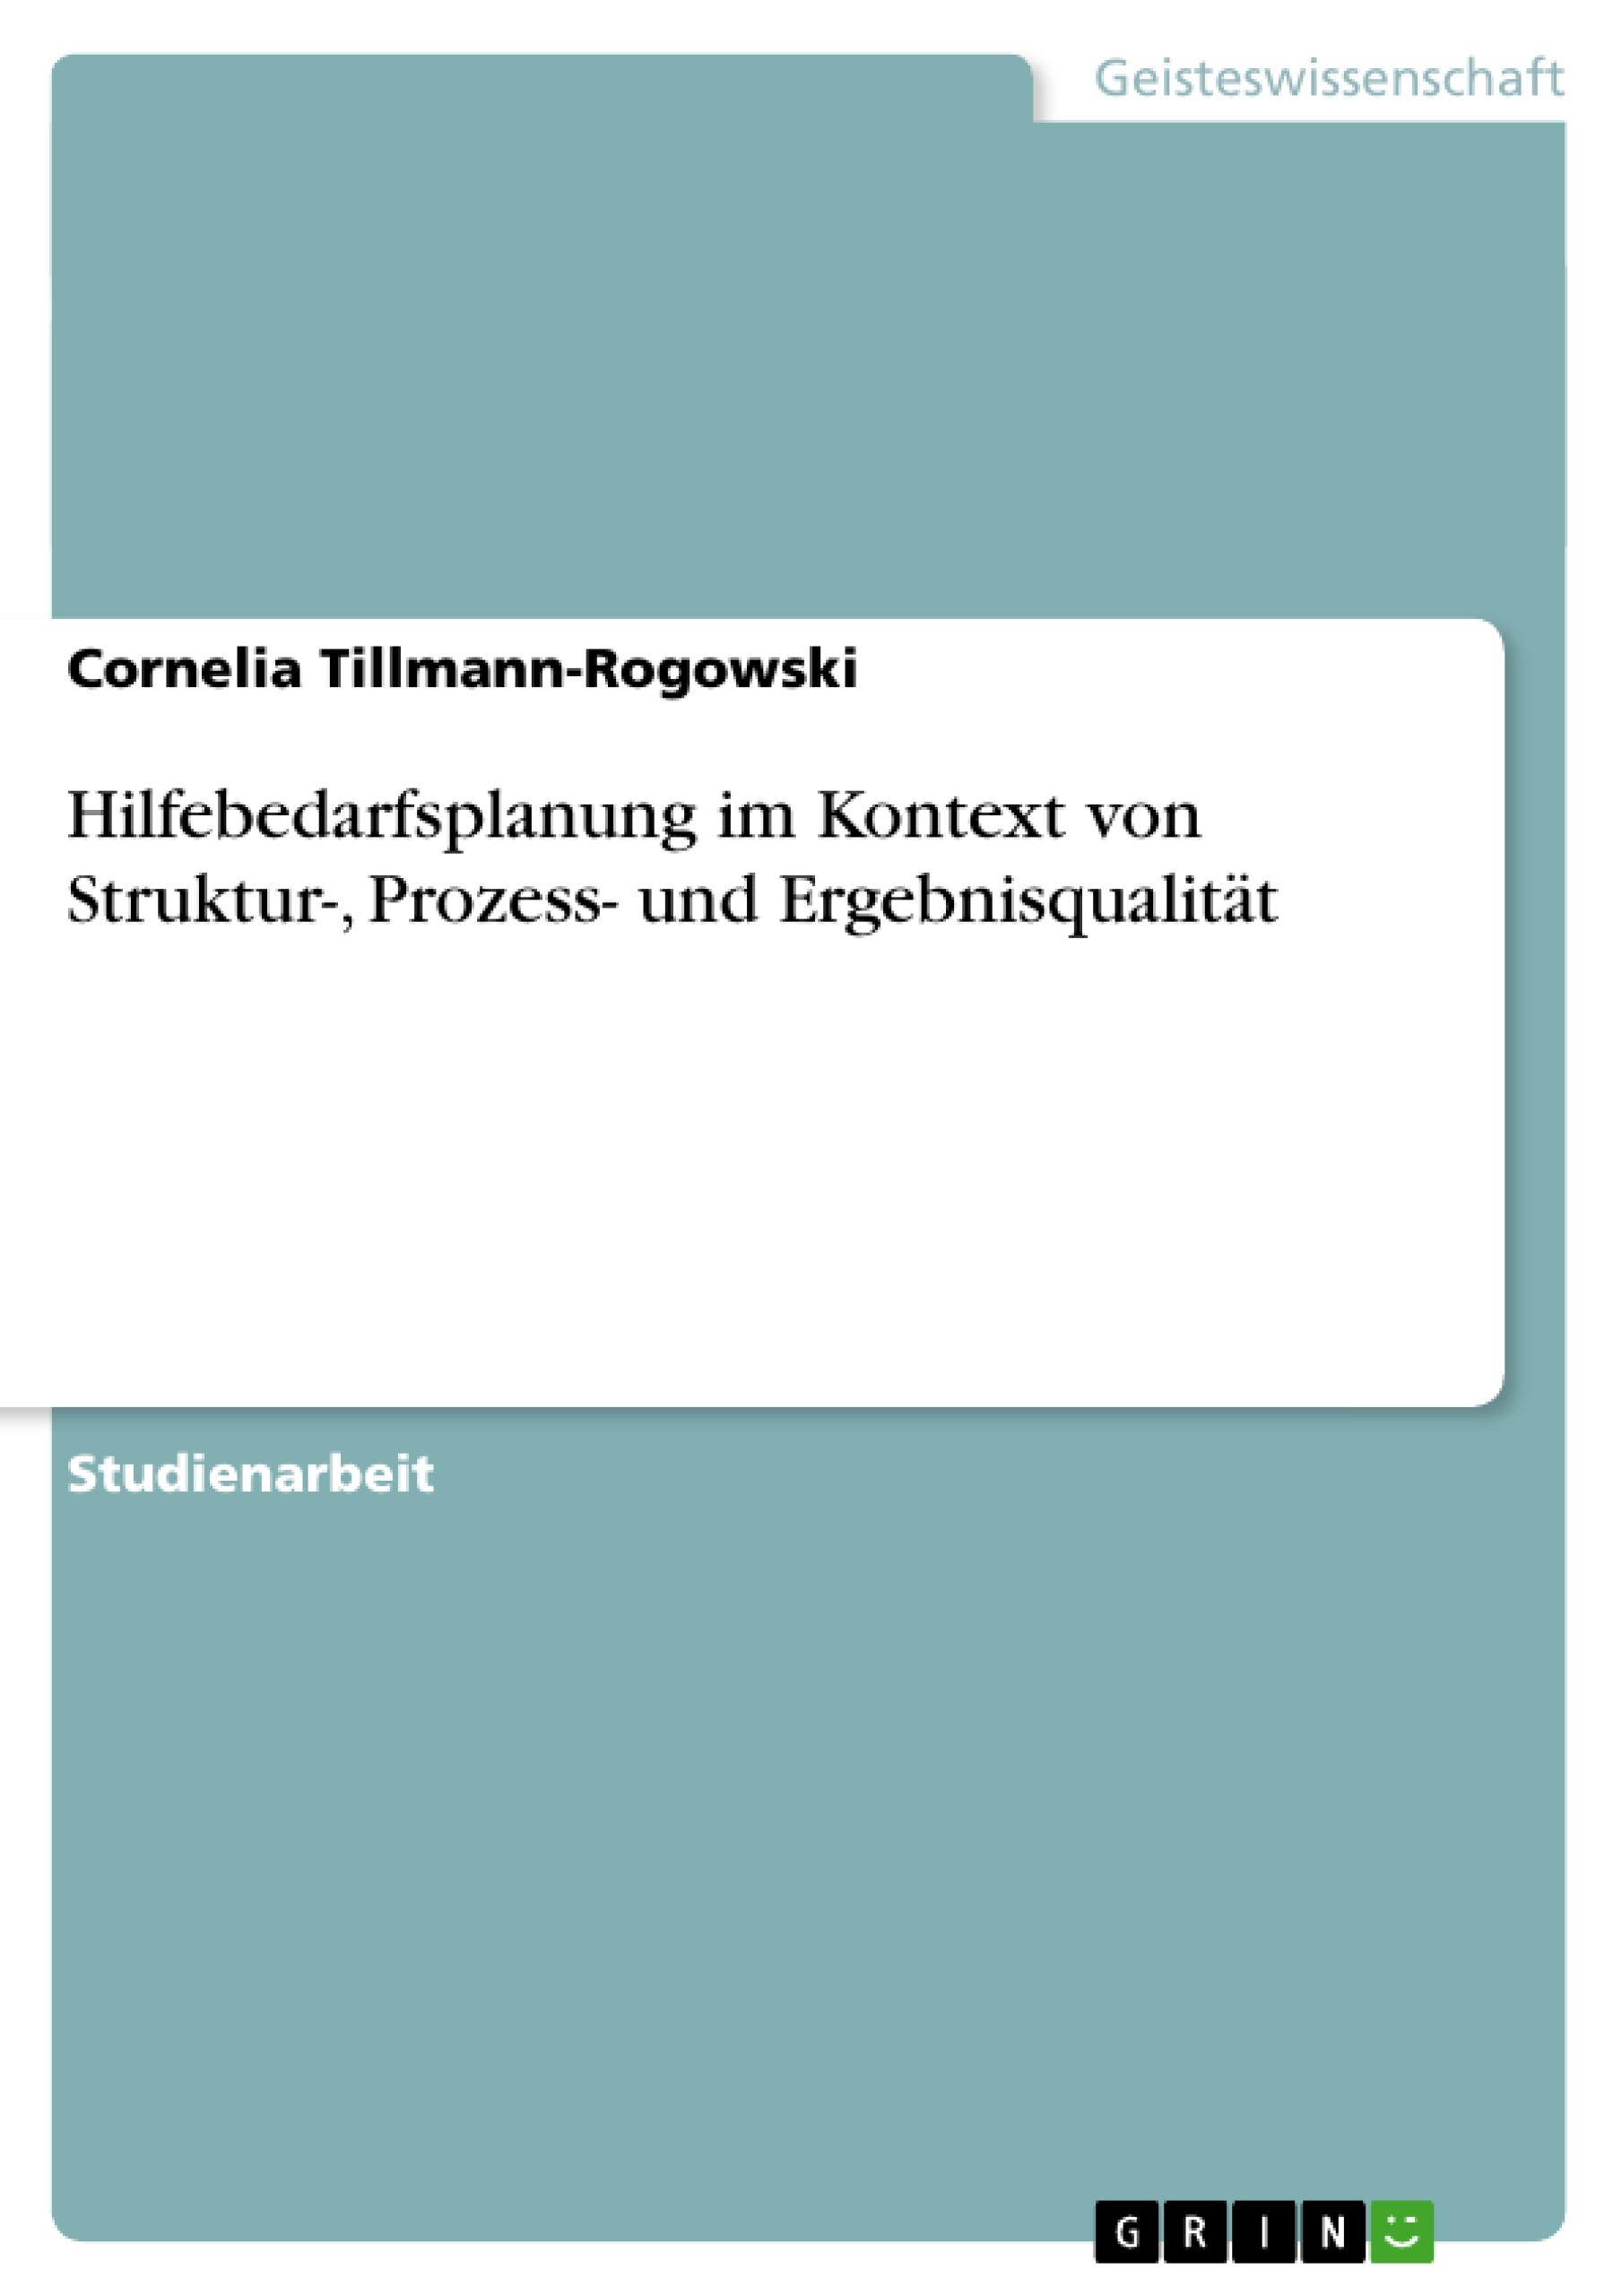 Hilfebedarfsplanung im Kontext von Struktur-, Prozess- und Ergebnisqualitaet - Tillmann-Rogowski, Cornelia